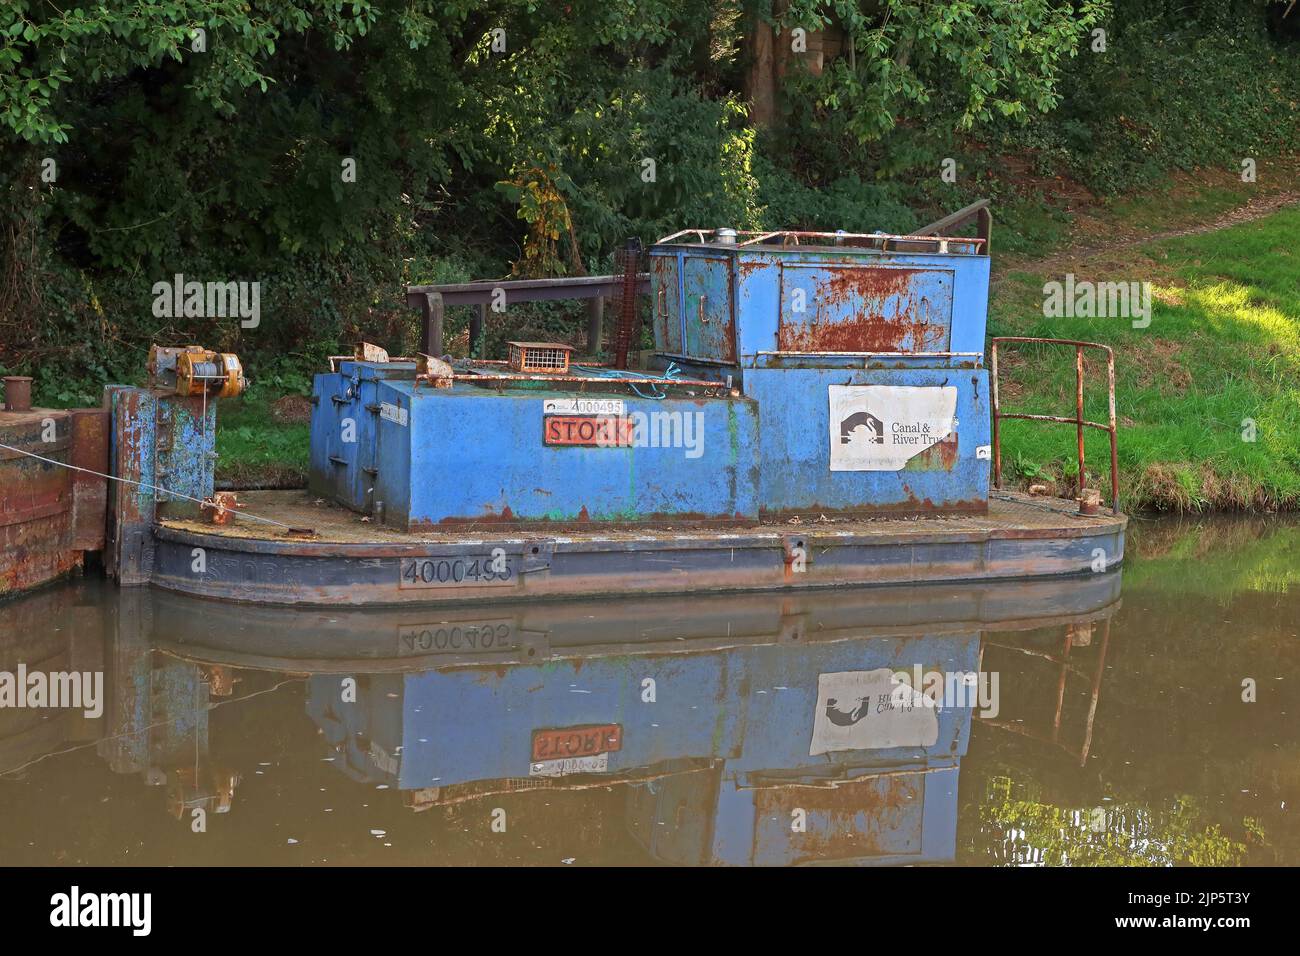 Stork 4000495 Maintenance boat, Shropshire Union canal, Audlem, Cheshire, England, UK, CW3 0AB Stock Photo